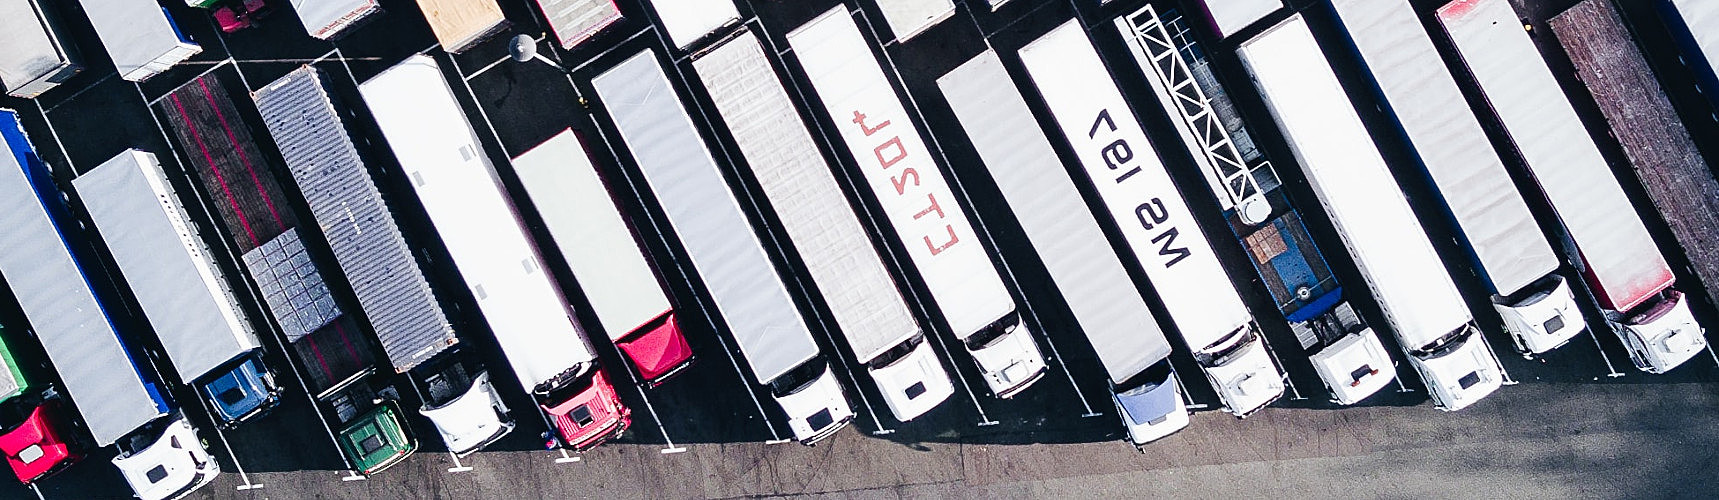 Capacidade de peso e carga dos caminhões: imagem aérea de varios caminhões estacionados